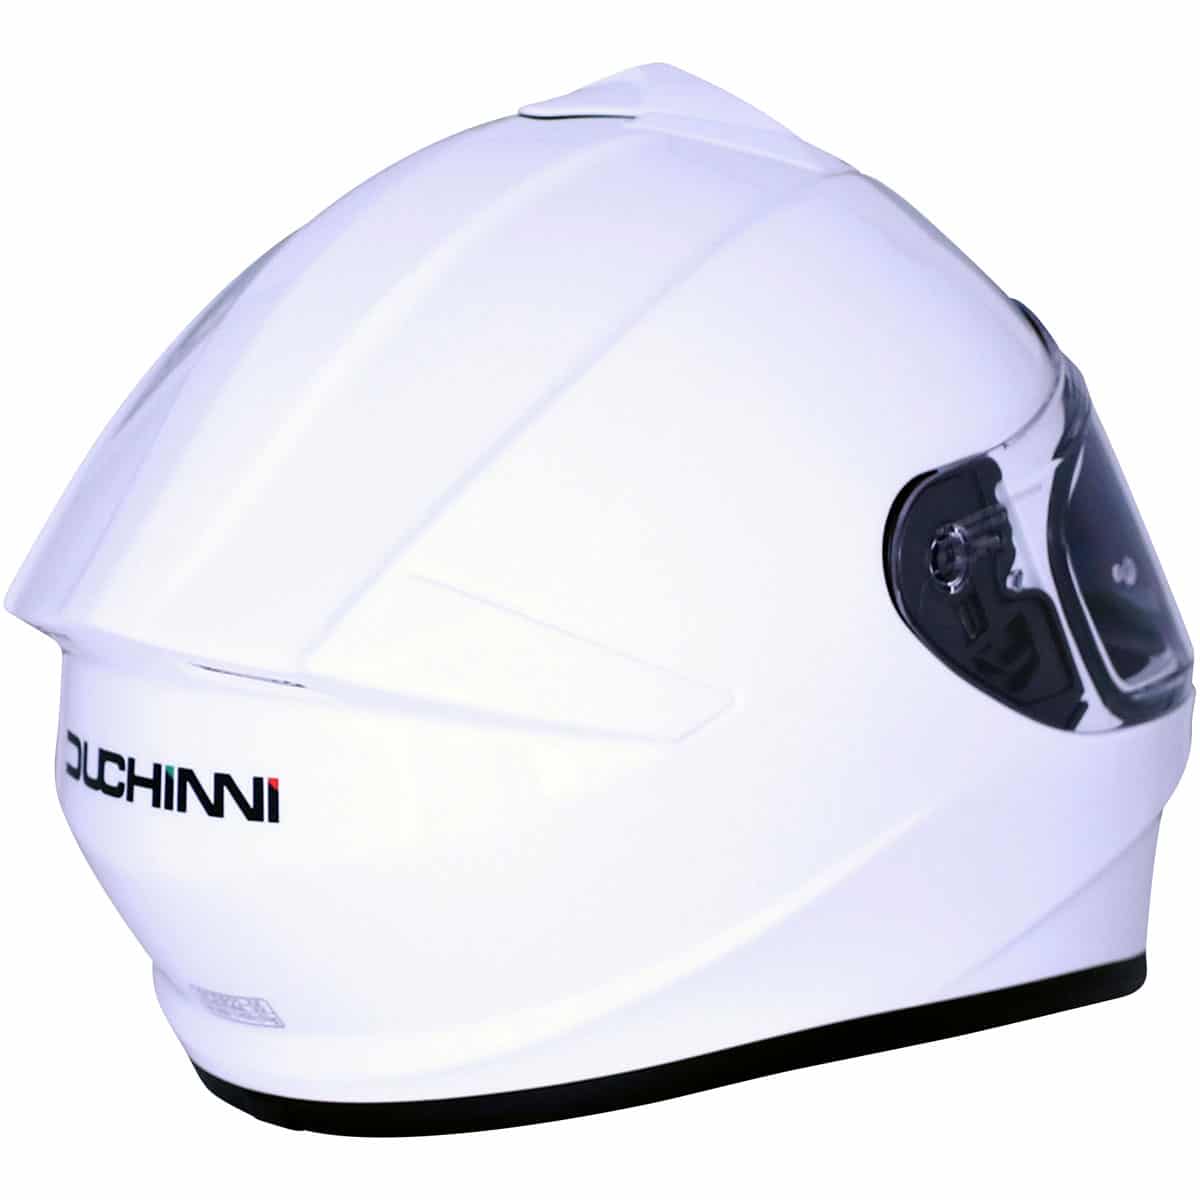 Duchinni D977 Full Face Motorcycle Helmet - White 3